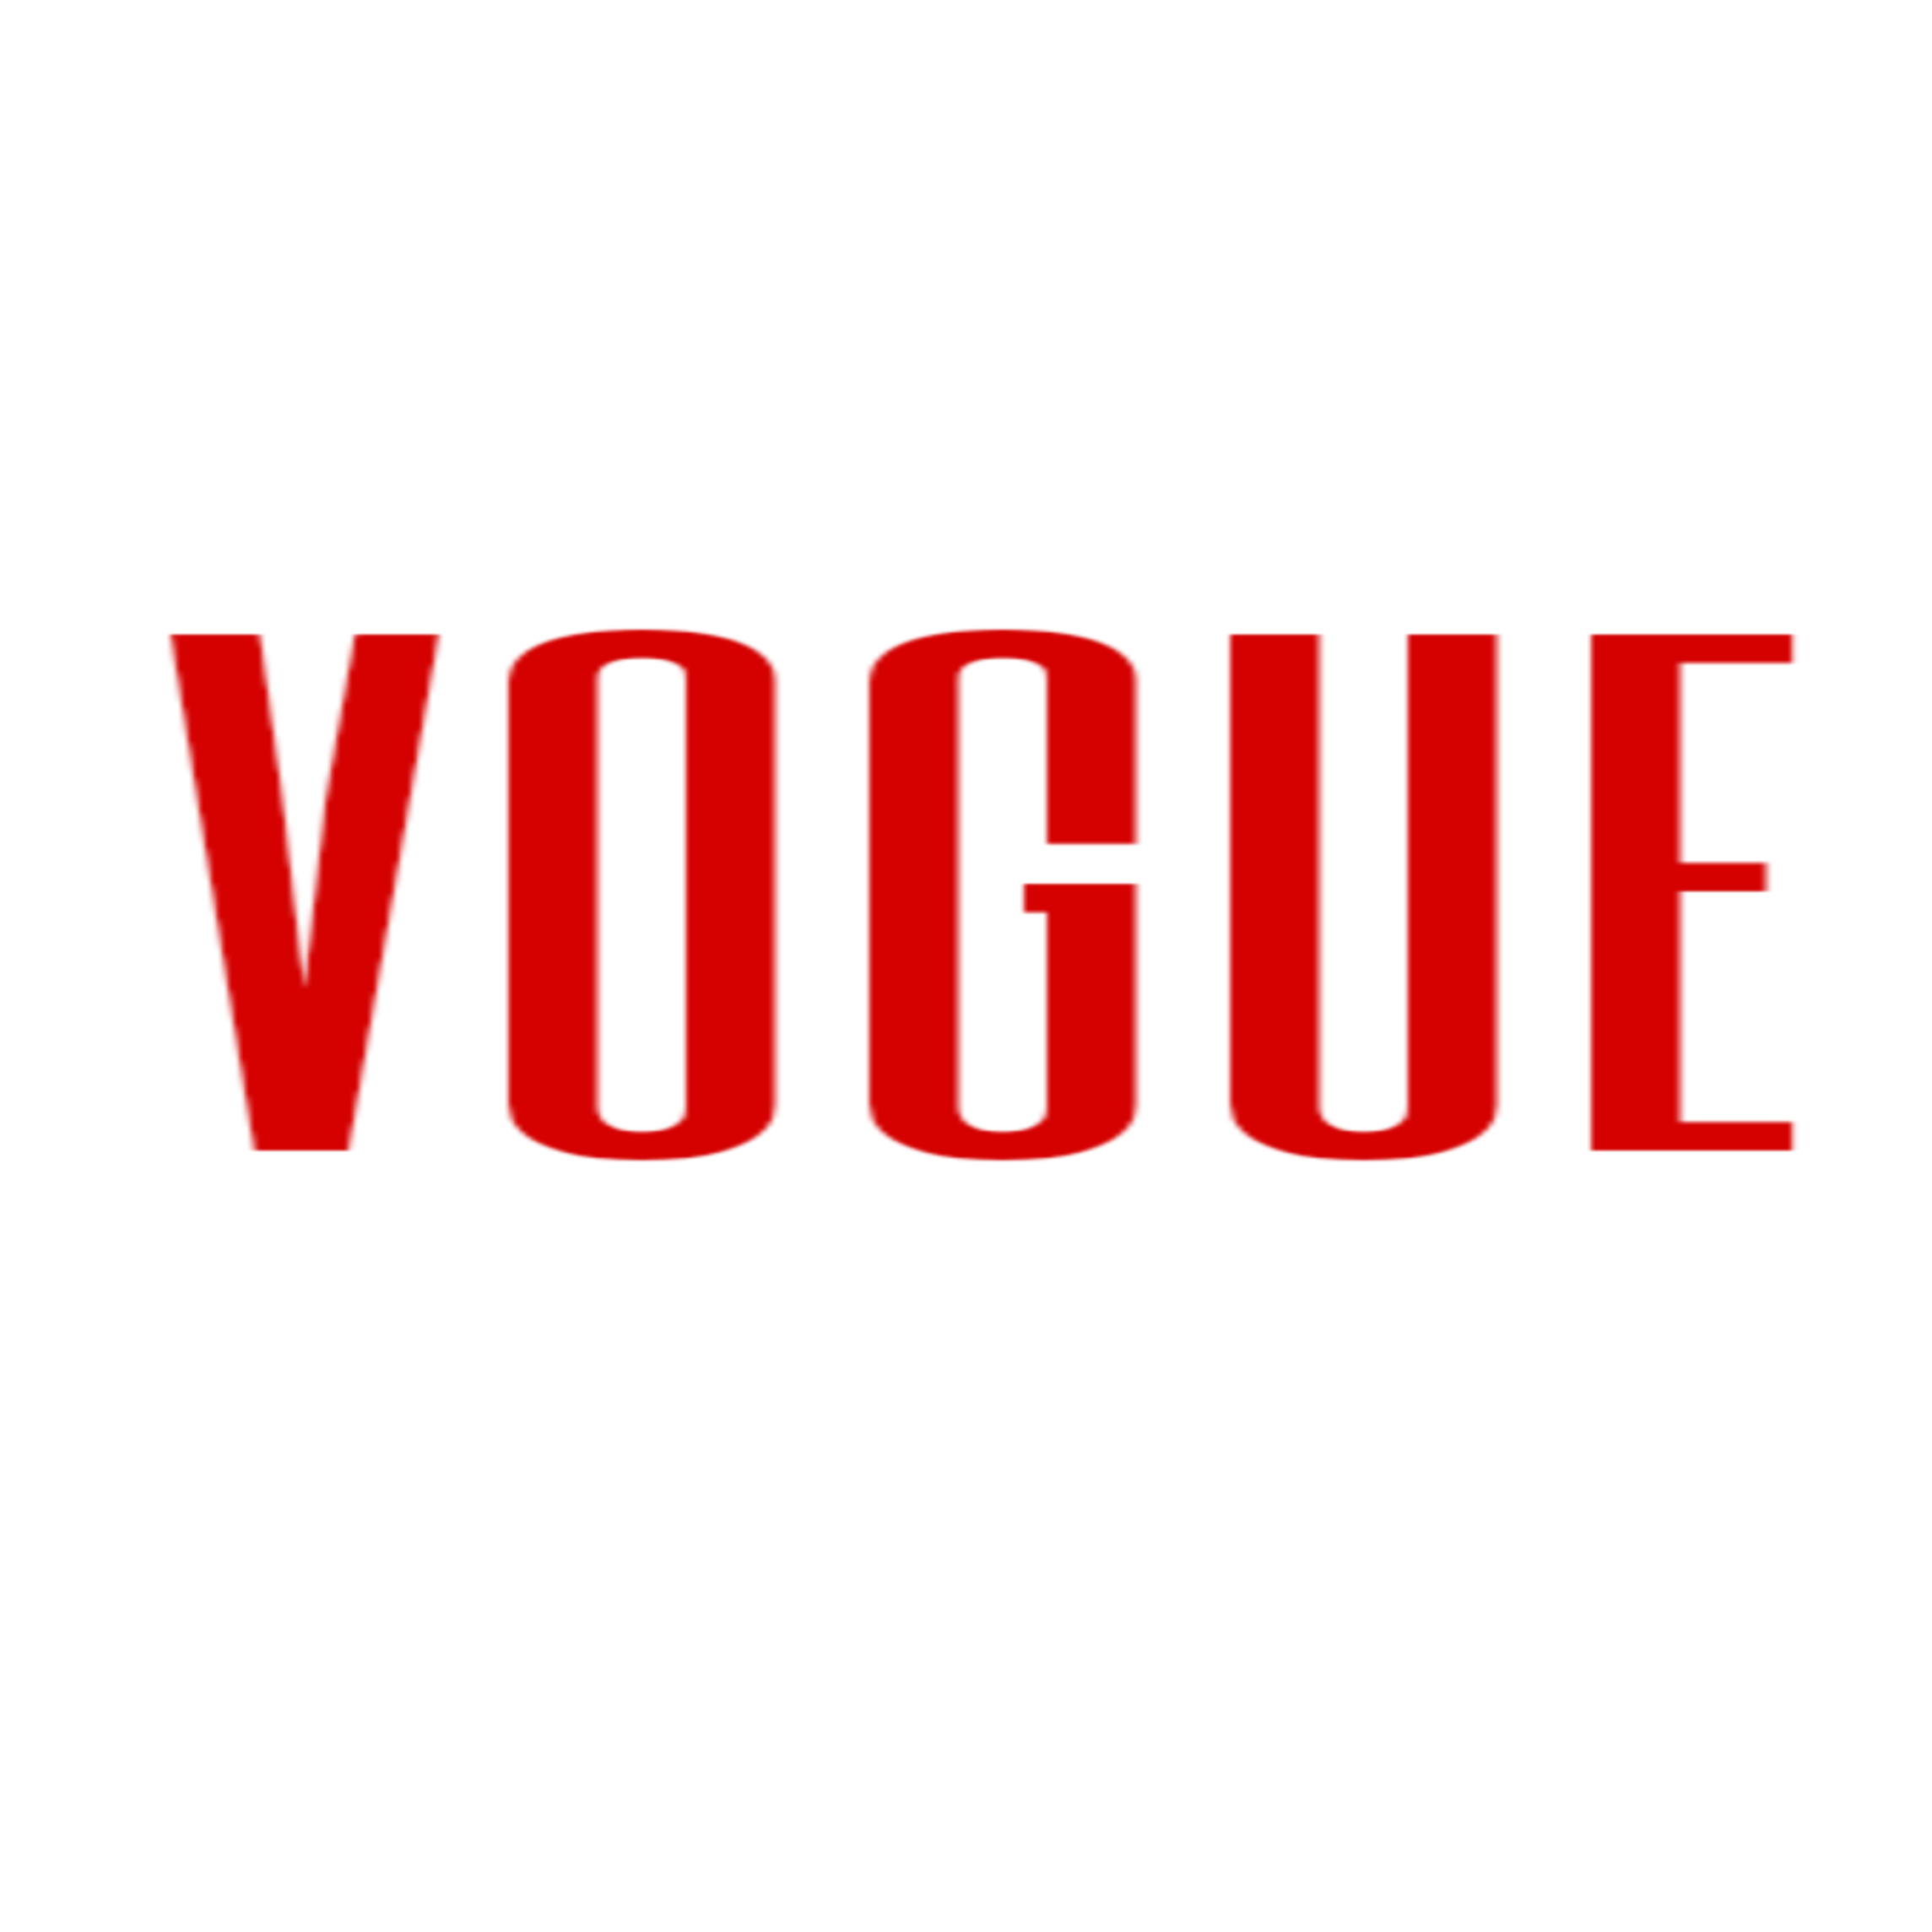 text vogue voguemagazine magazine sticker by @mmerforever67